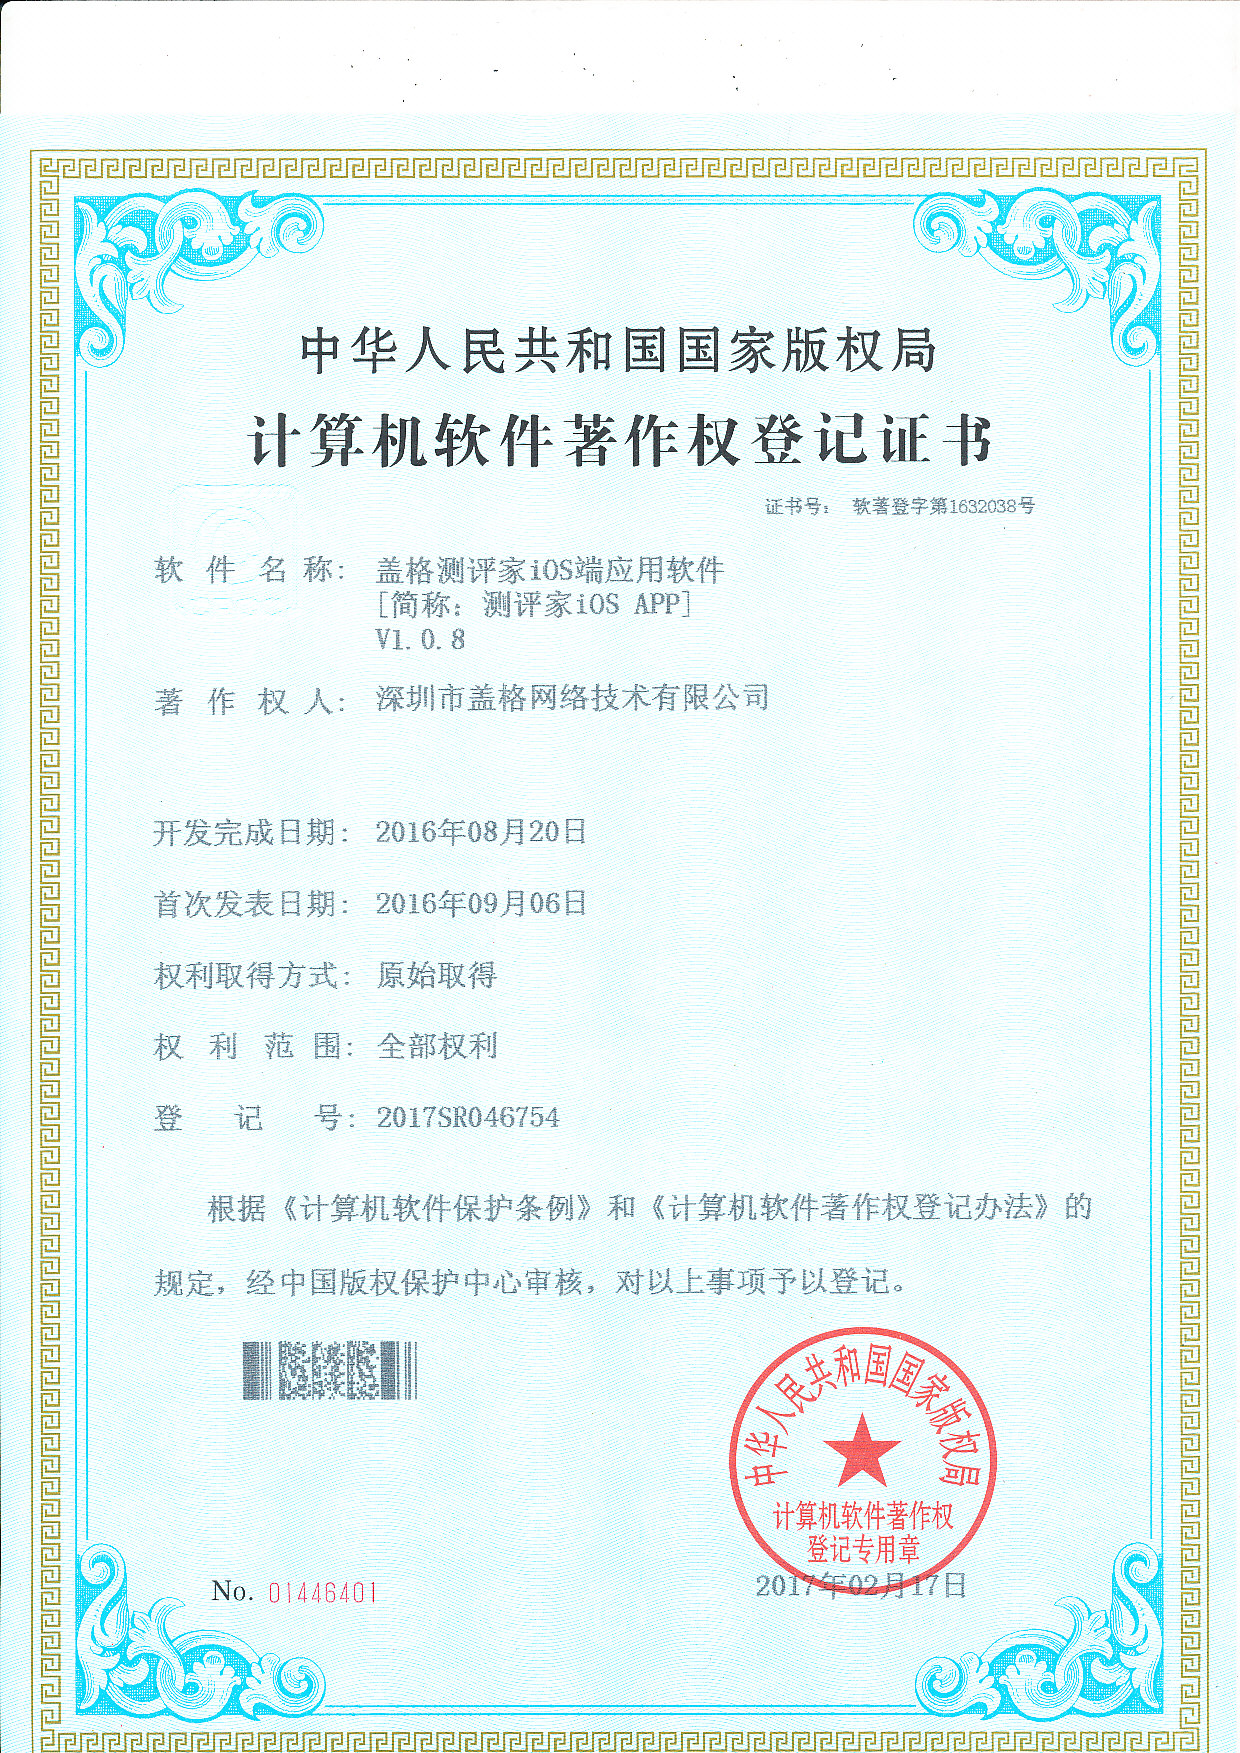 深圳市盖格网络_测评家软件著作权证书